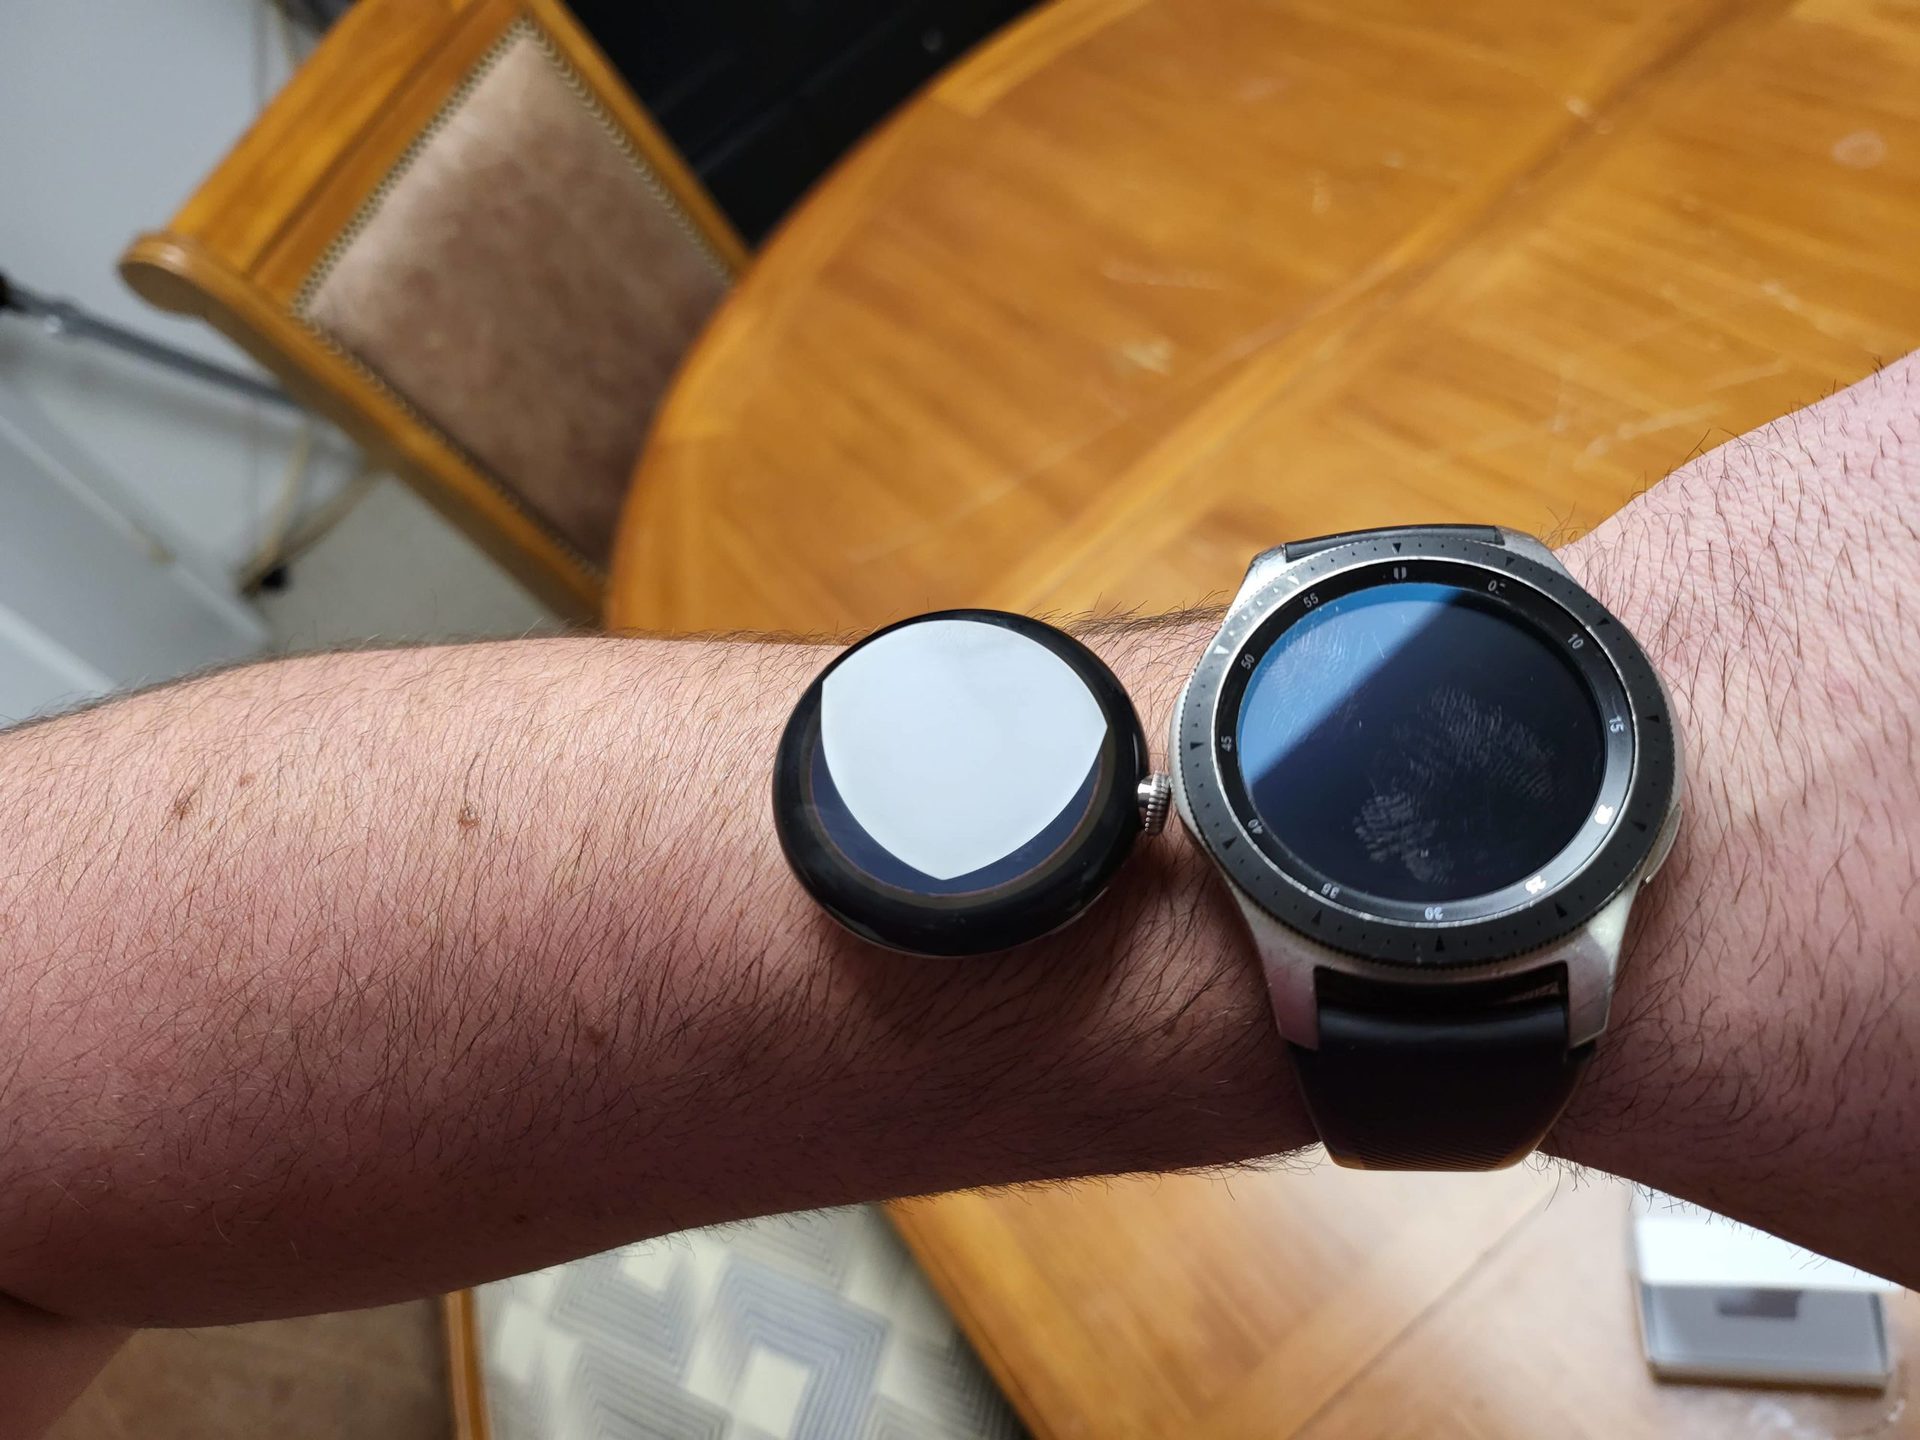 Pixel Watch on wrist tagtech414 reddit